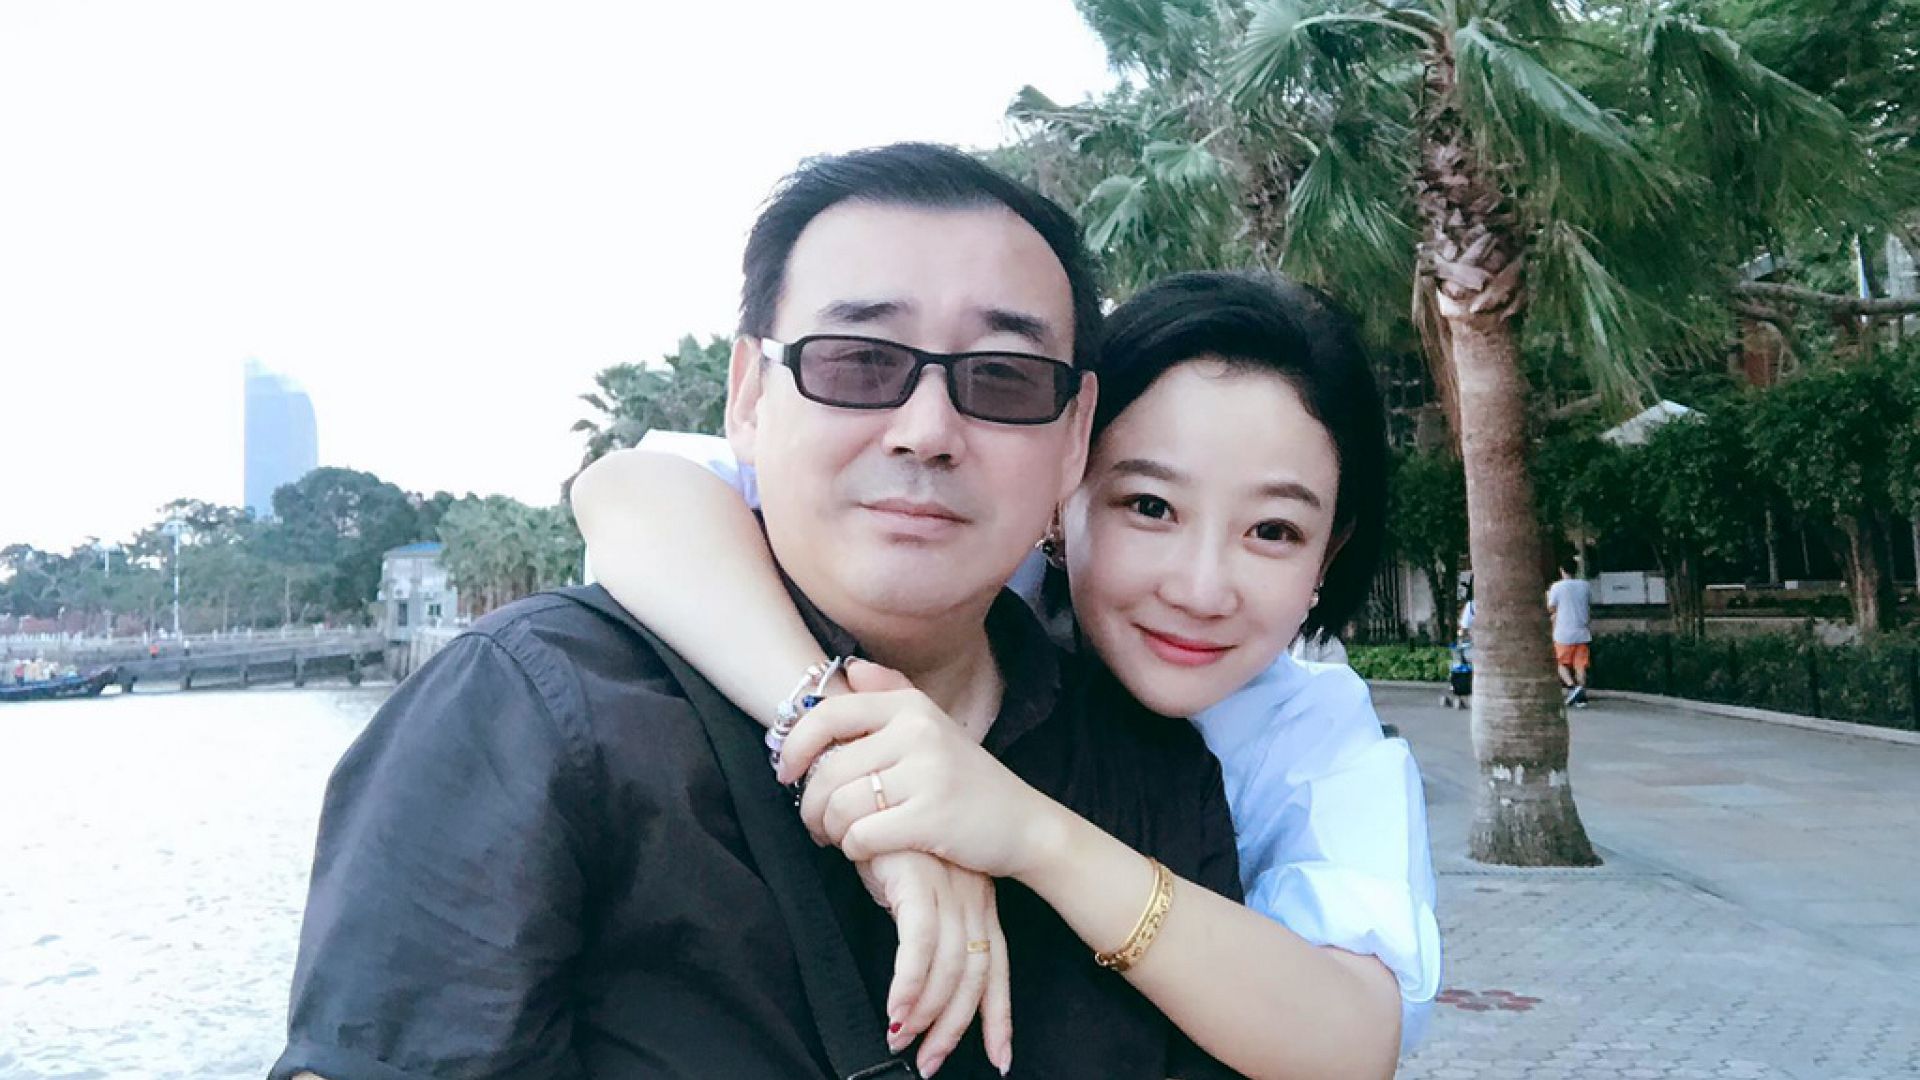 Çin, Avustralyalı yazar Yang Hengjun’a ertelemeli idam cezası verdi